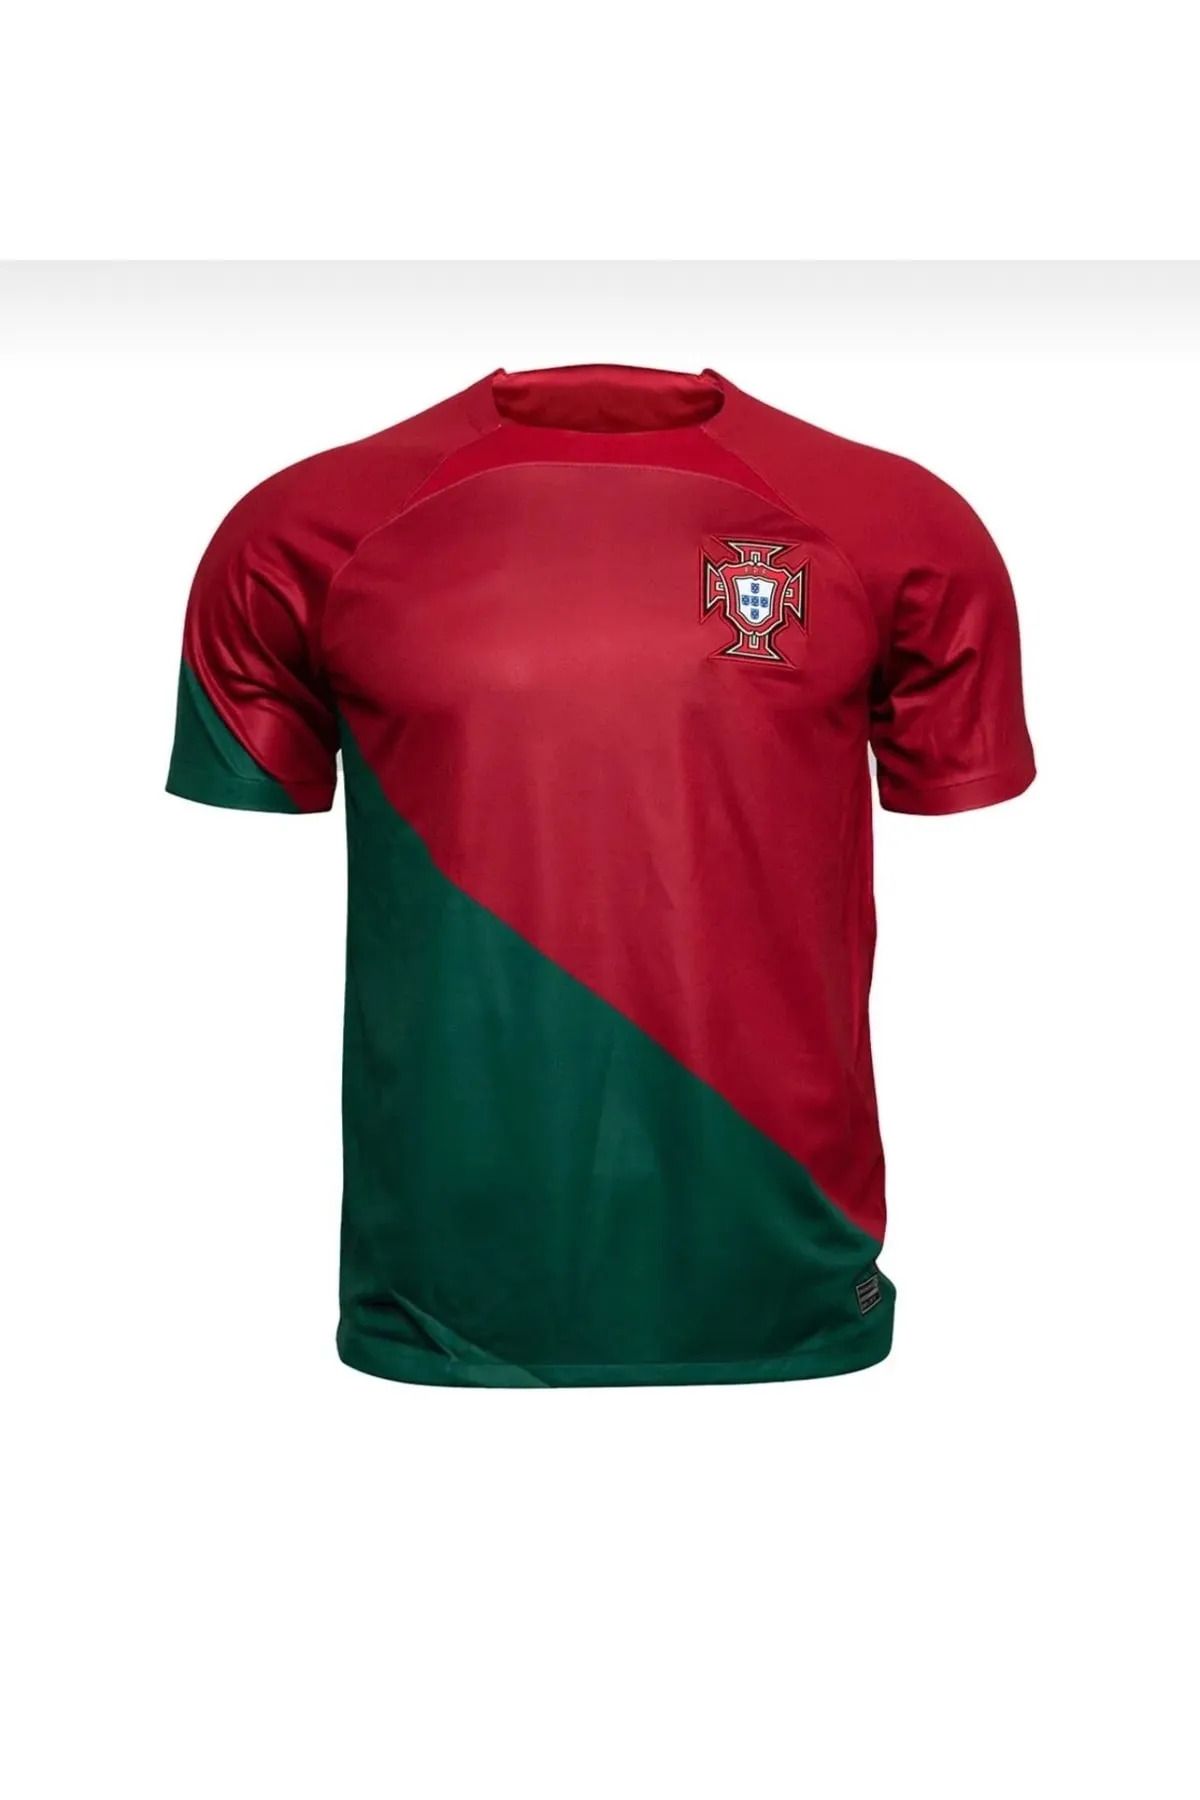 Lion Spor Ronaldo Portekiz Milli Takımı Kırmızı Yeni Sezon Forması / Cr7 Portekiz